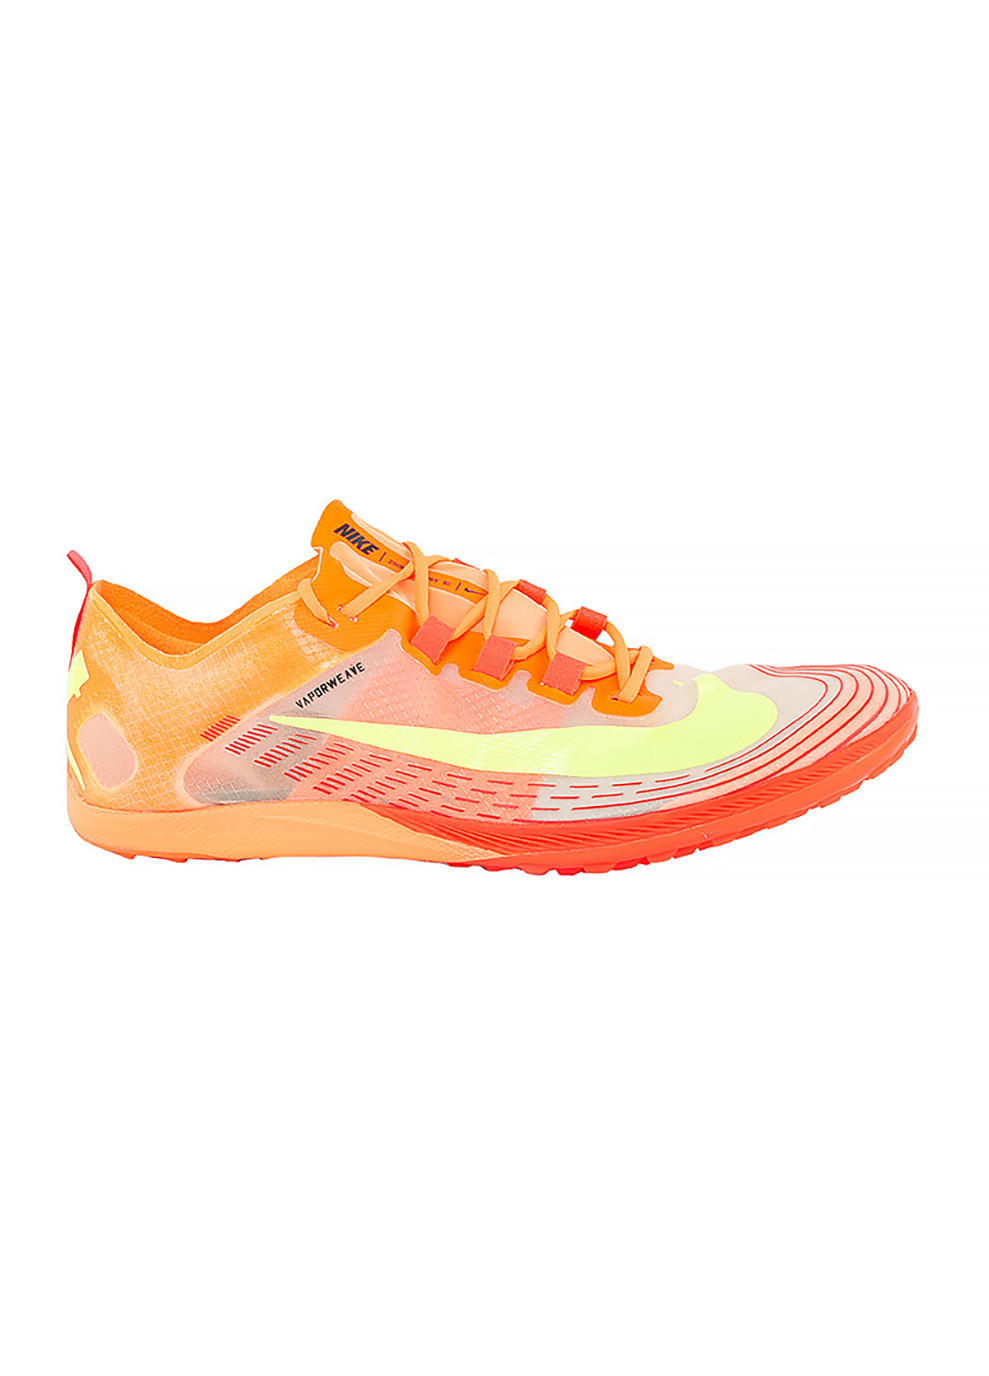 Оранжевые демисезонные кроссовки zoom victory waffle 5 оранжевый Nike